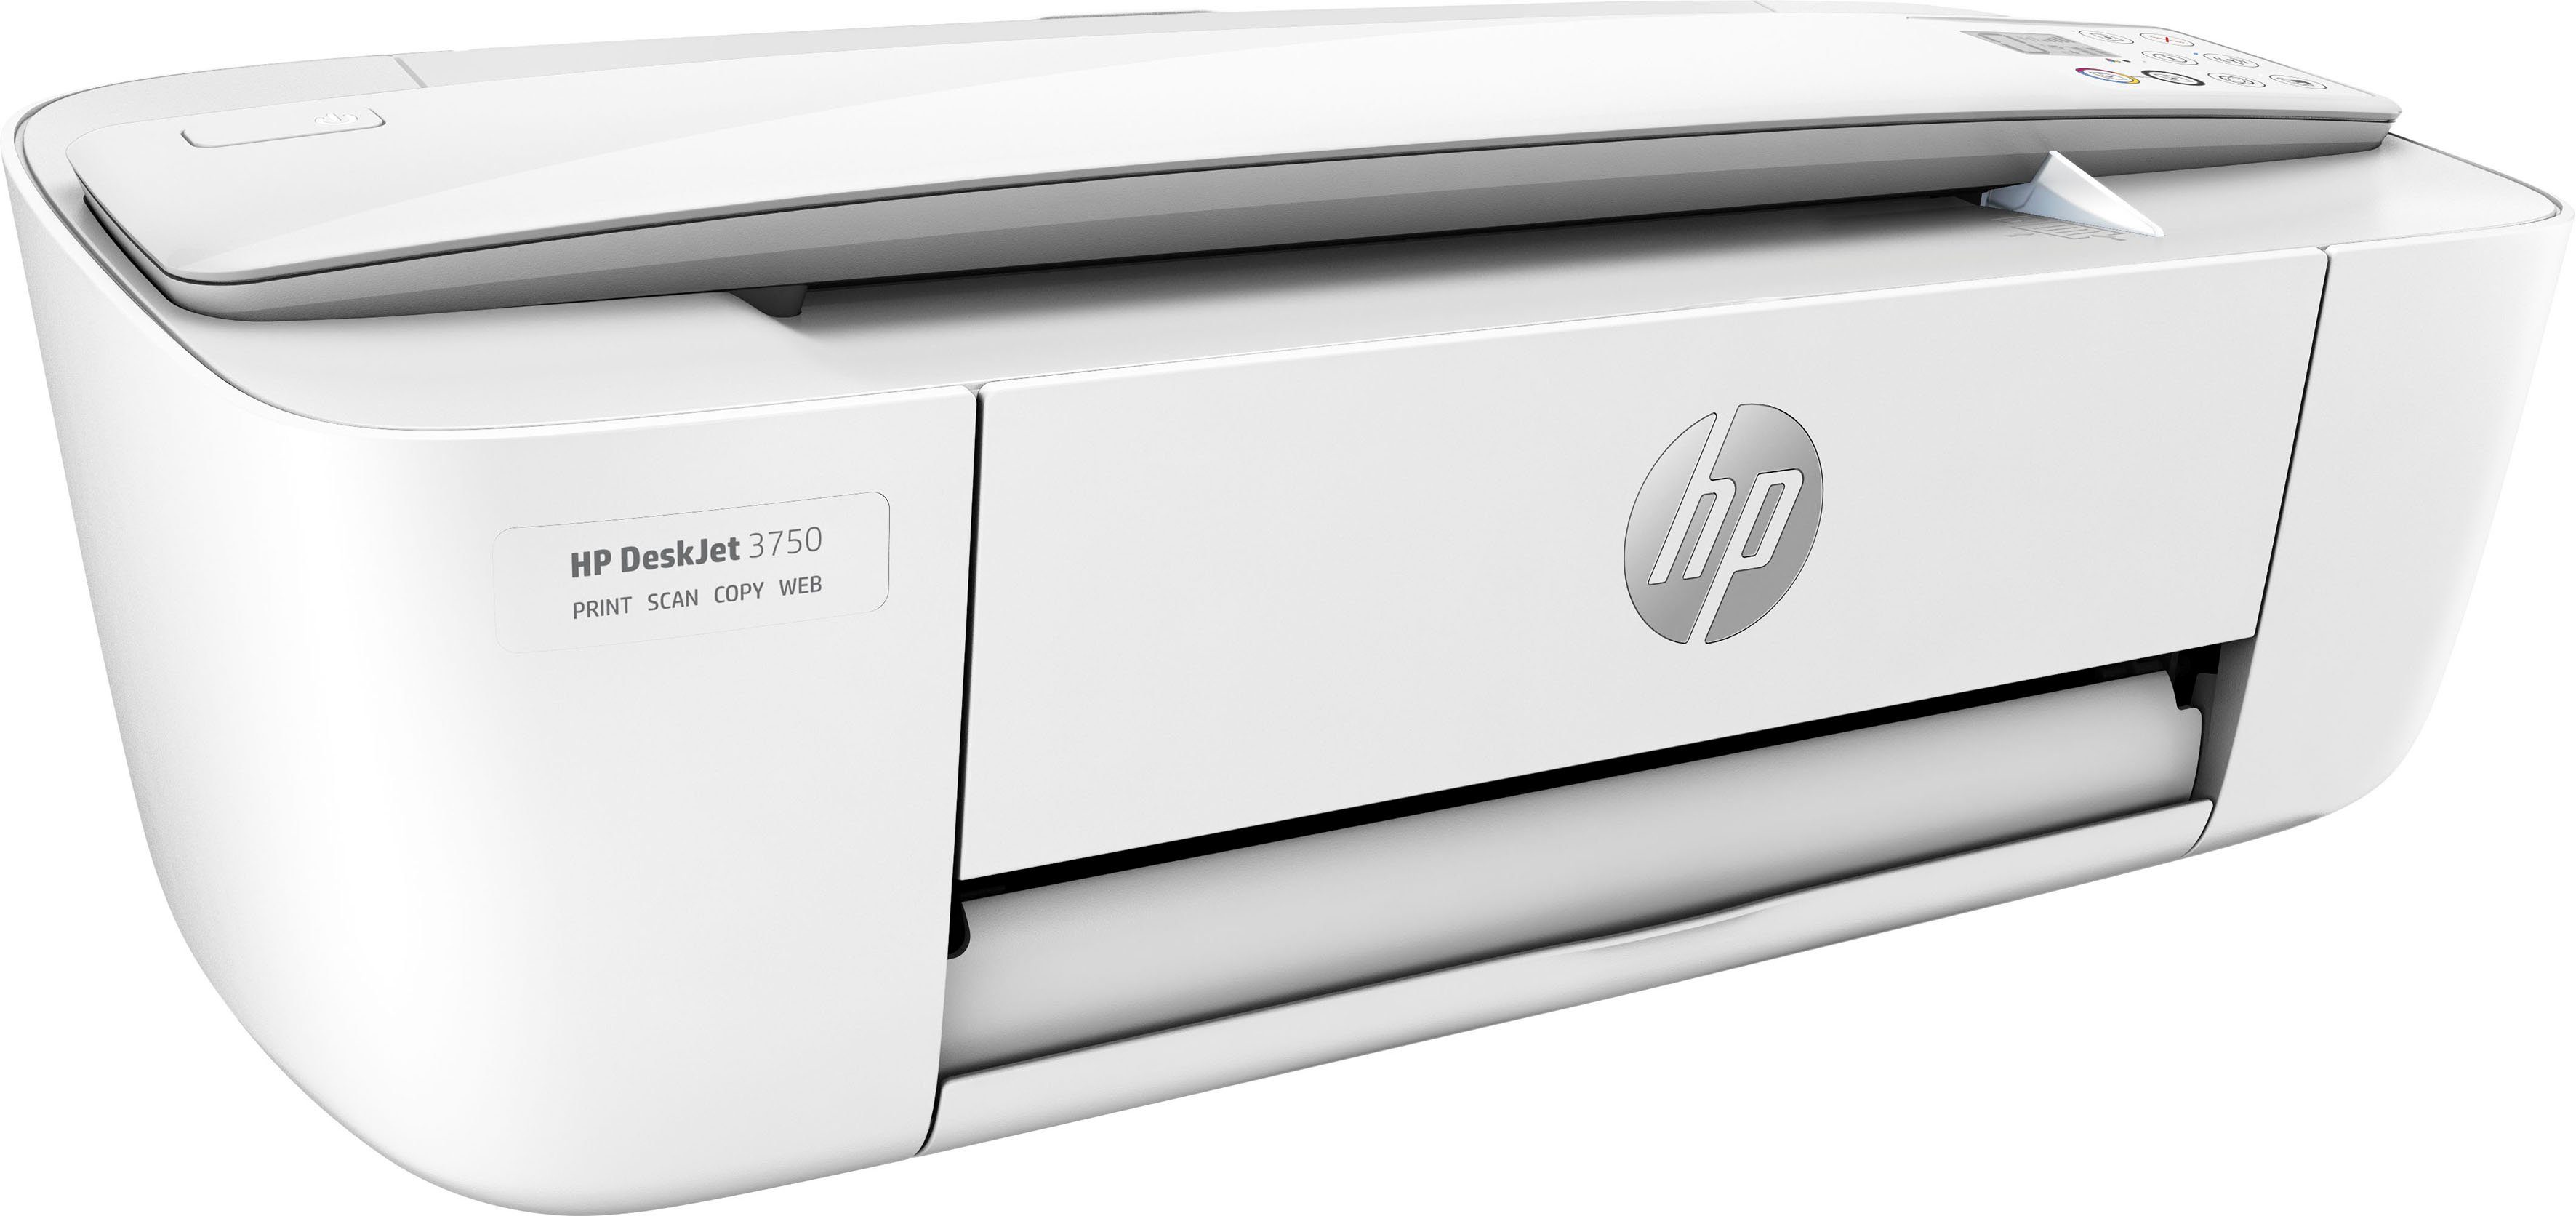 (Wi-Fi), Instant HP+ kompatibel) HP Multifunktionsdrucker, 3750 Ink DeskJet (WLAN Drucker